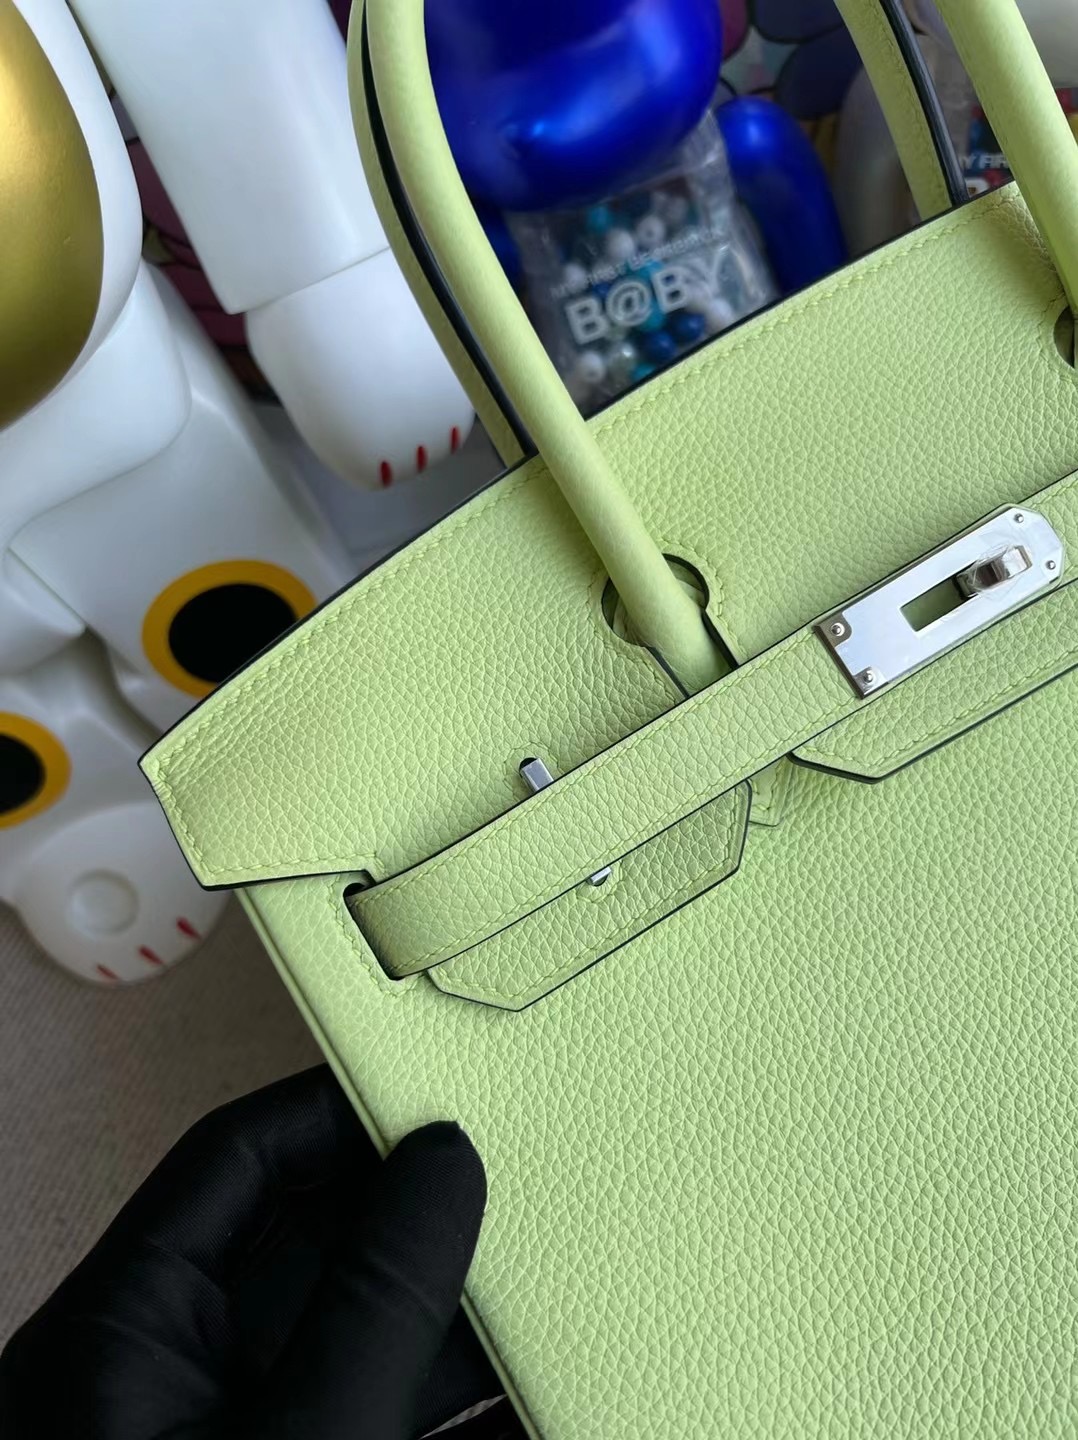 Qatar Doha Hermès Bag price and pictures Birkin 30 Togo Vert Absinthe U 刻